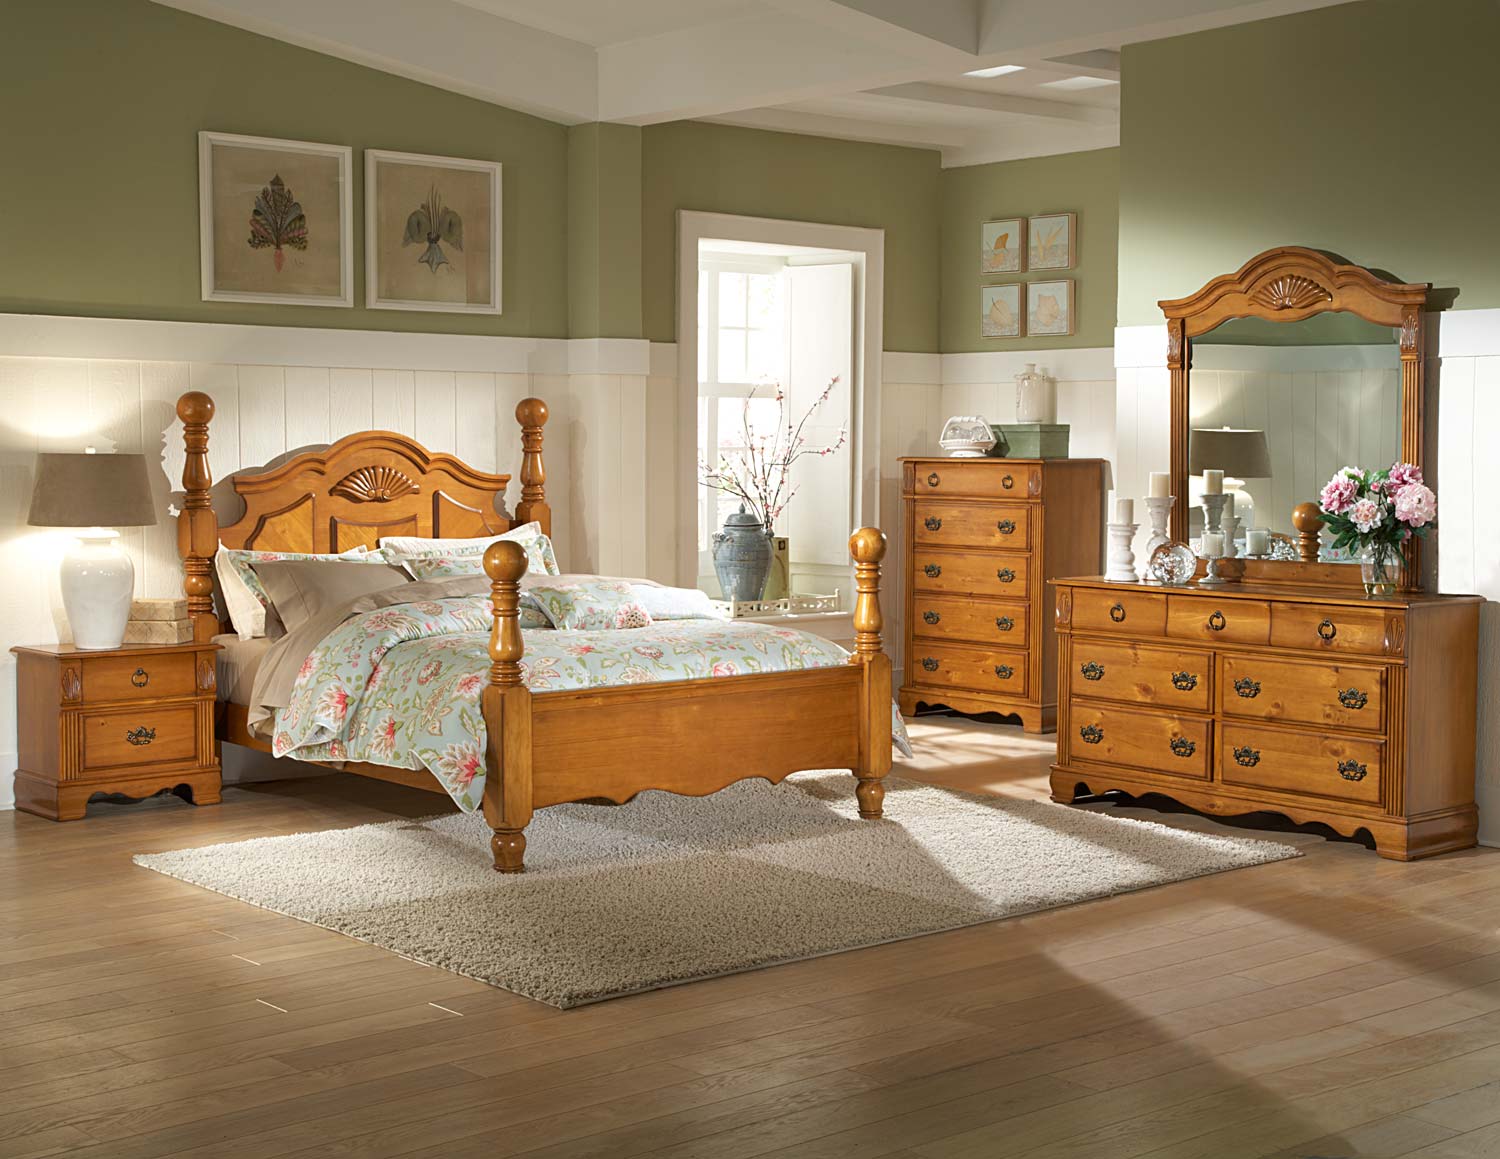 pine bedroom furniture ideas